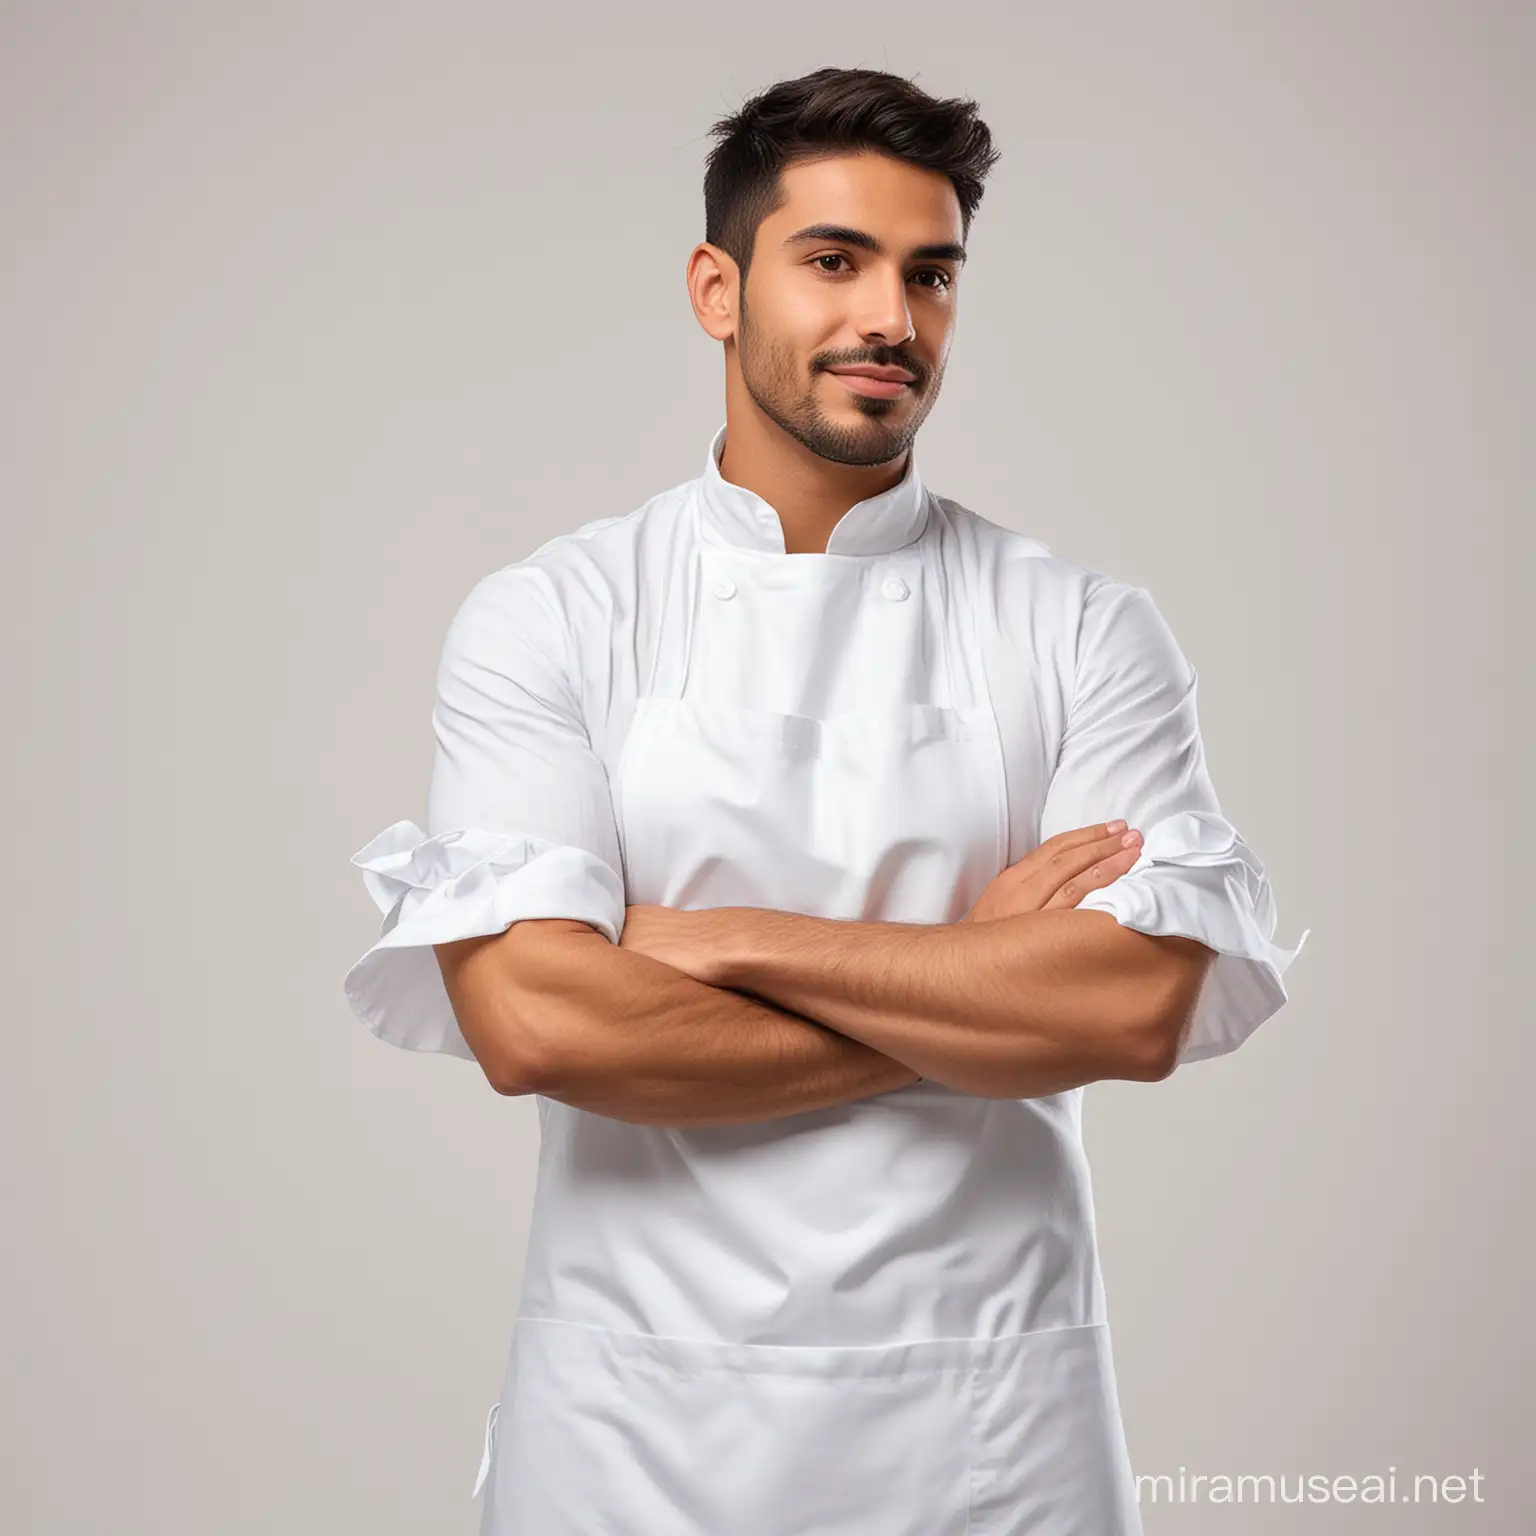 Latin Man Posing in White Apron on White Background